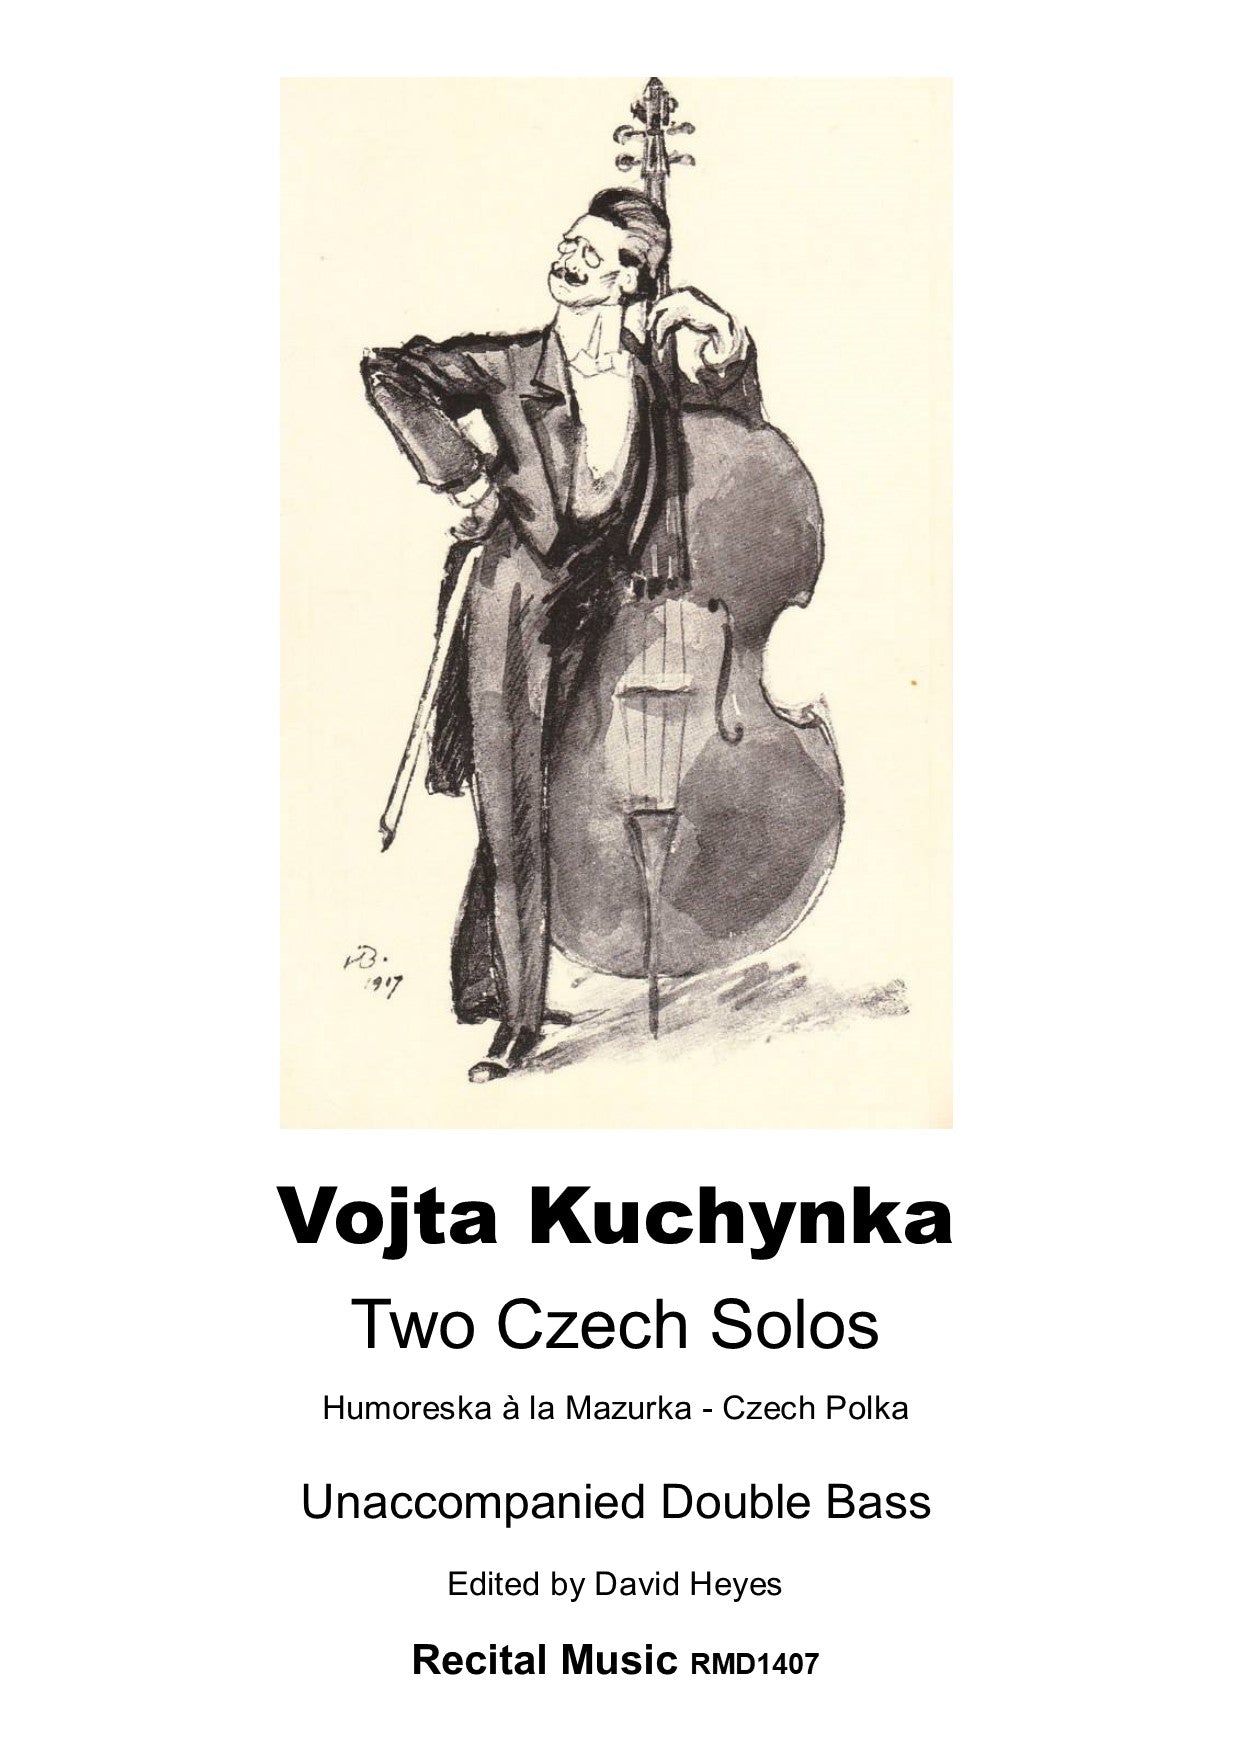 Vojta Kuchynka: Two Czech Solos for unaccompanied double bass